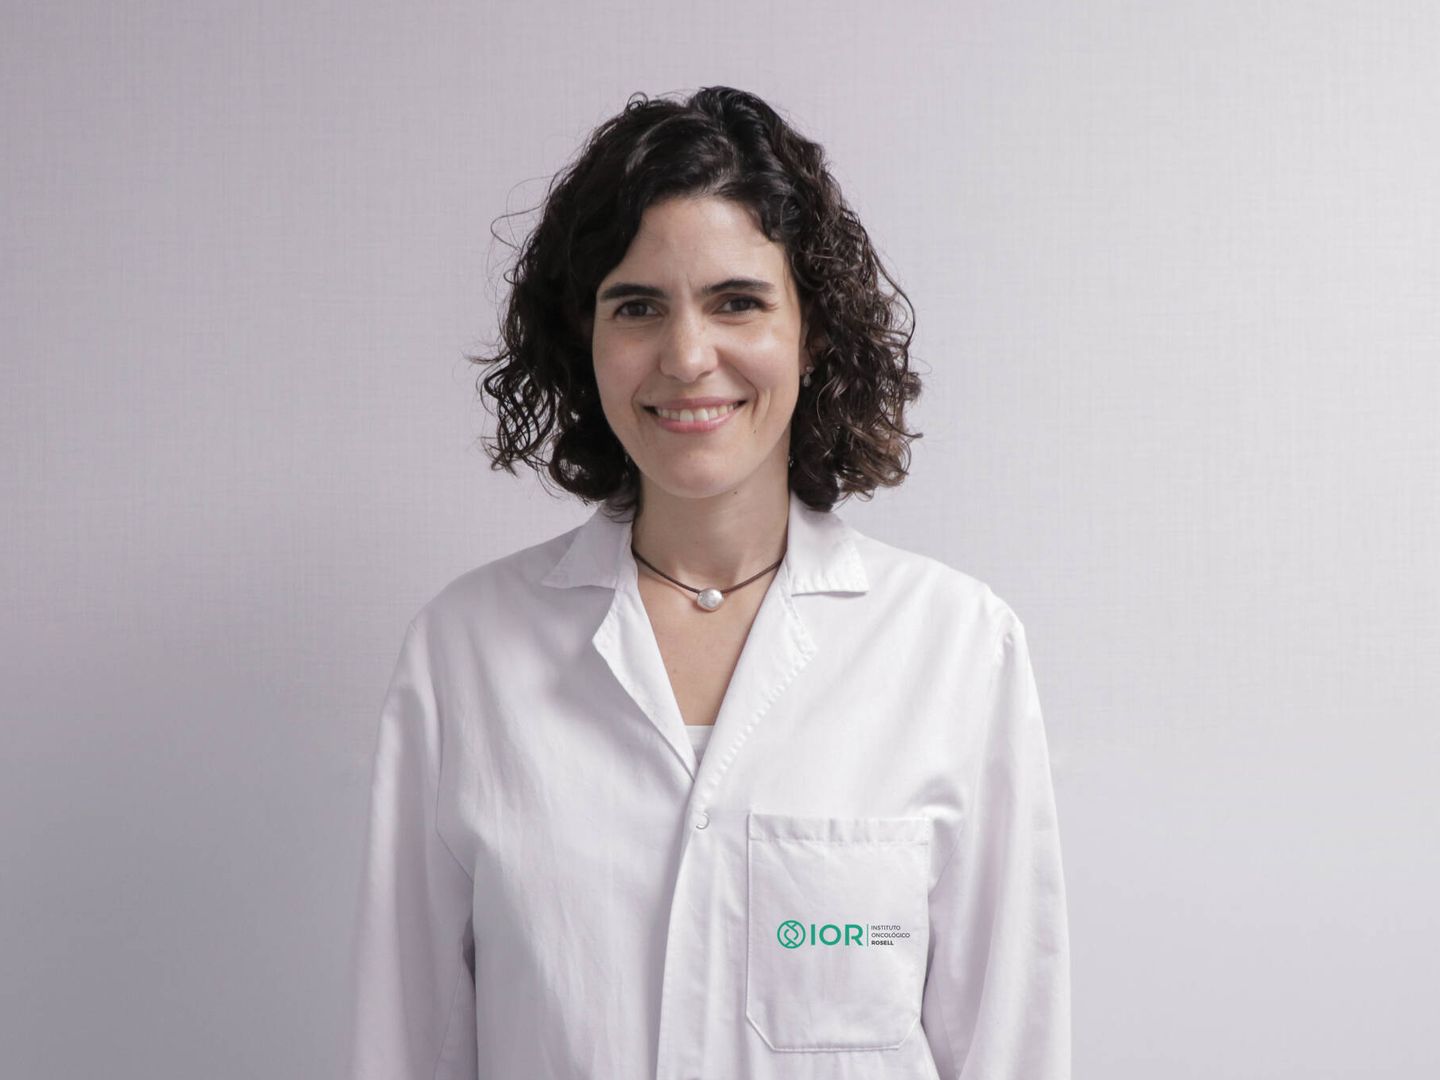 Irene Moya, oncóloga médica de IOR y coordinadora del proyecto en el HUGC. (Foto cedida)